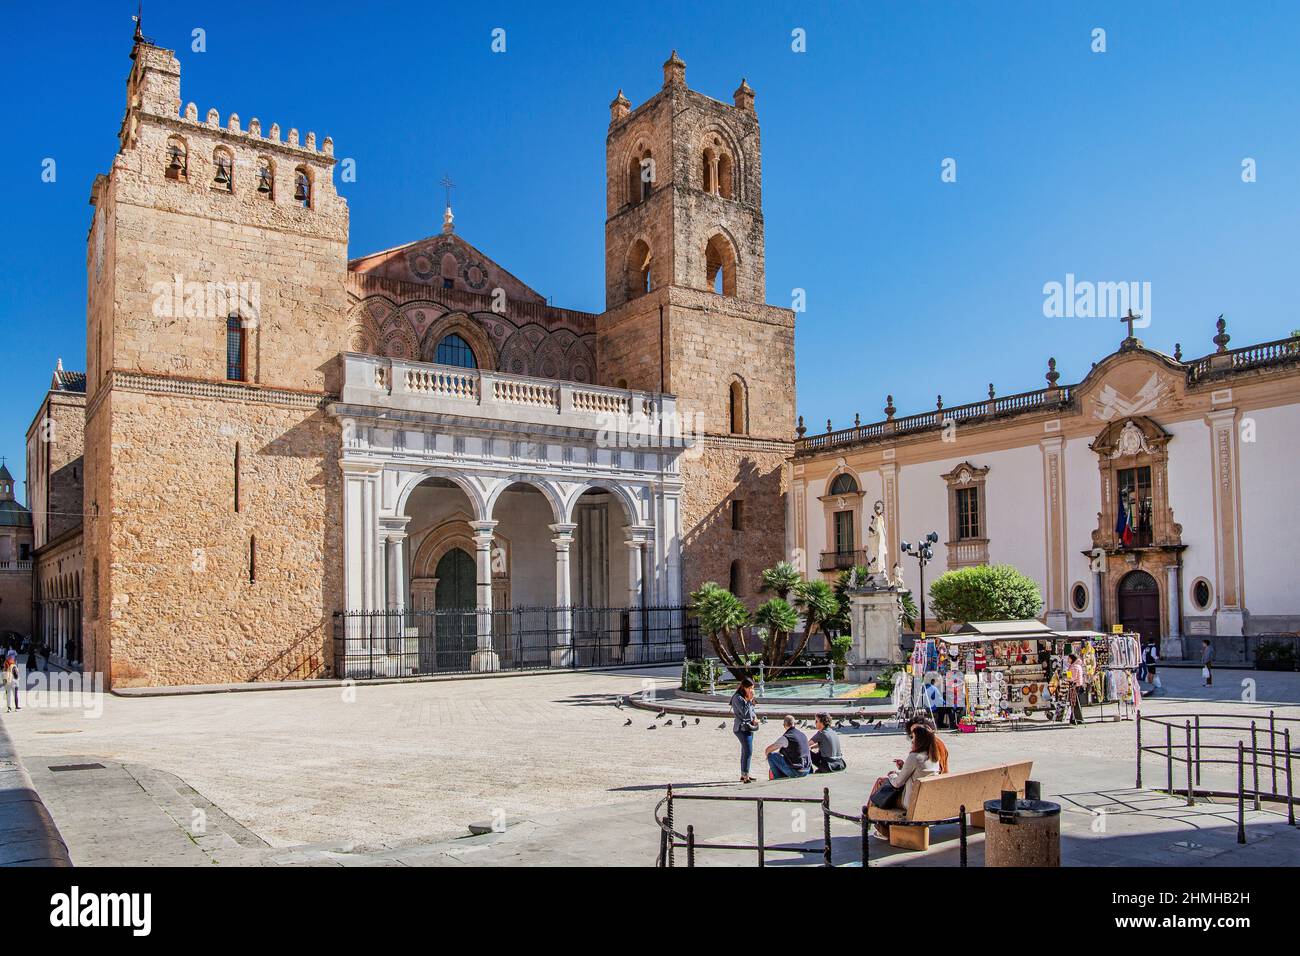 Portal y torres de la catedral en Piazza Guglielmo II, Monreale, Sicilia, Italia Foto de stock